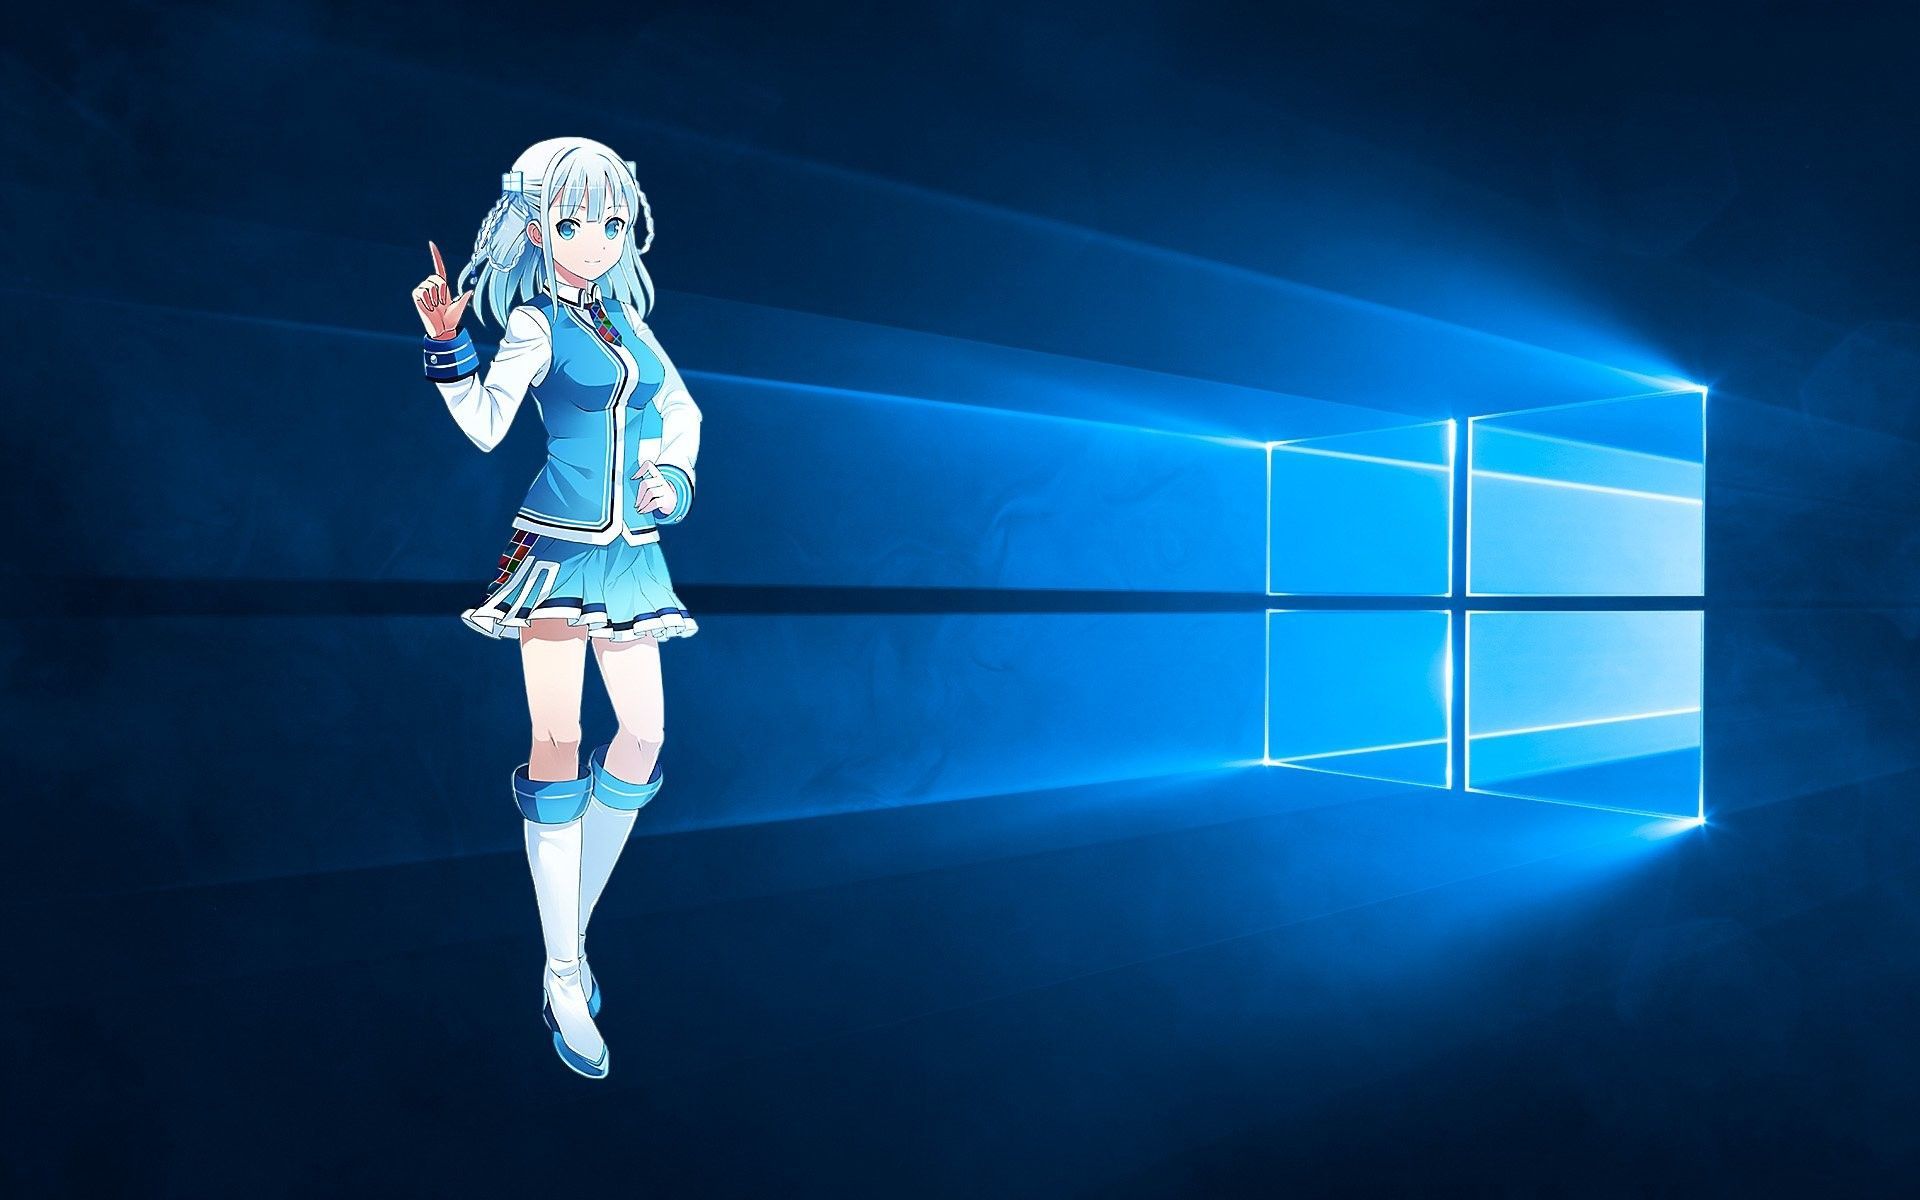 Gratis 85 Kumpulan Wallpaper Anime 4k Windows HD Terbaik